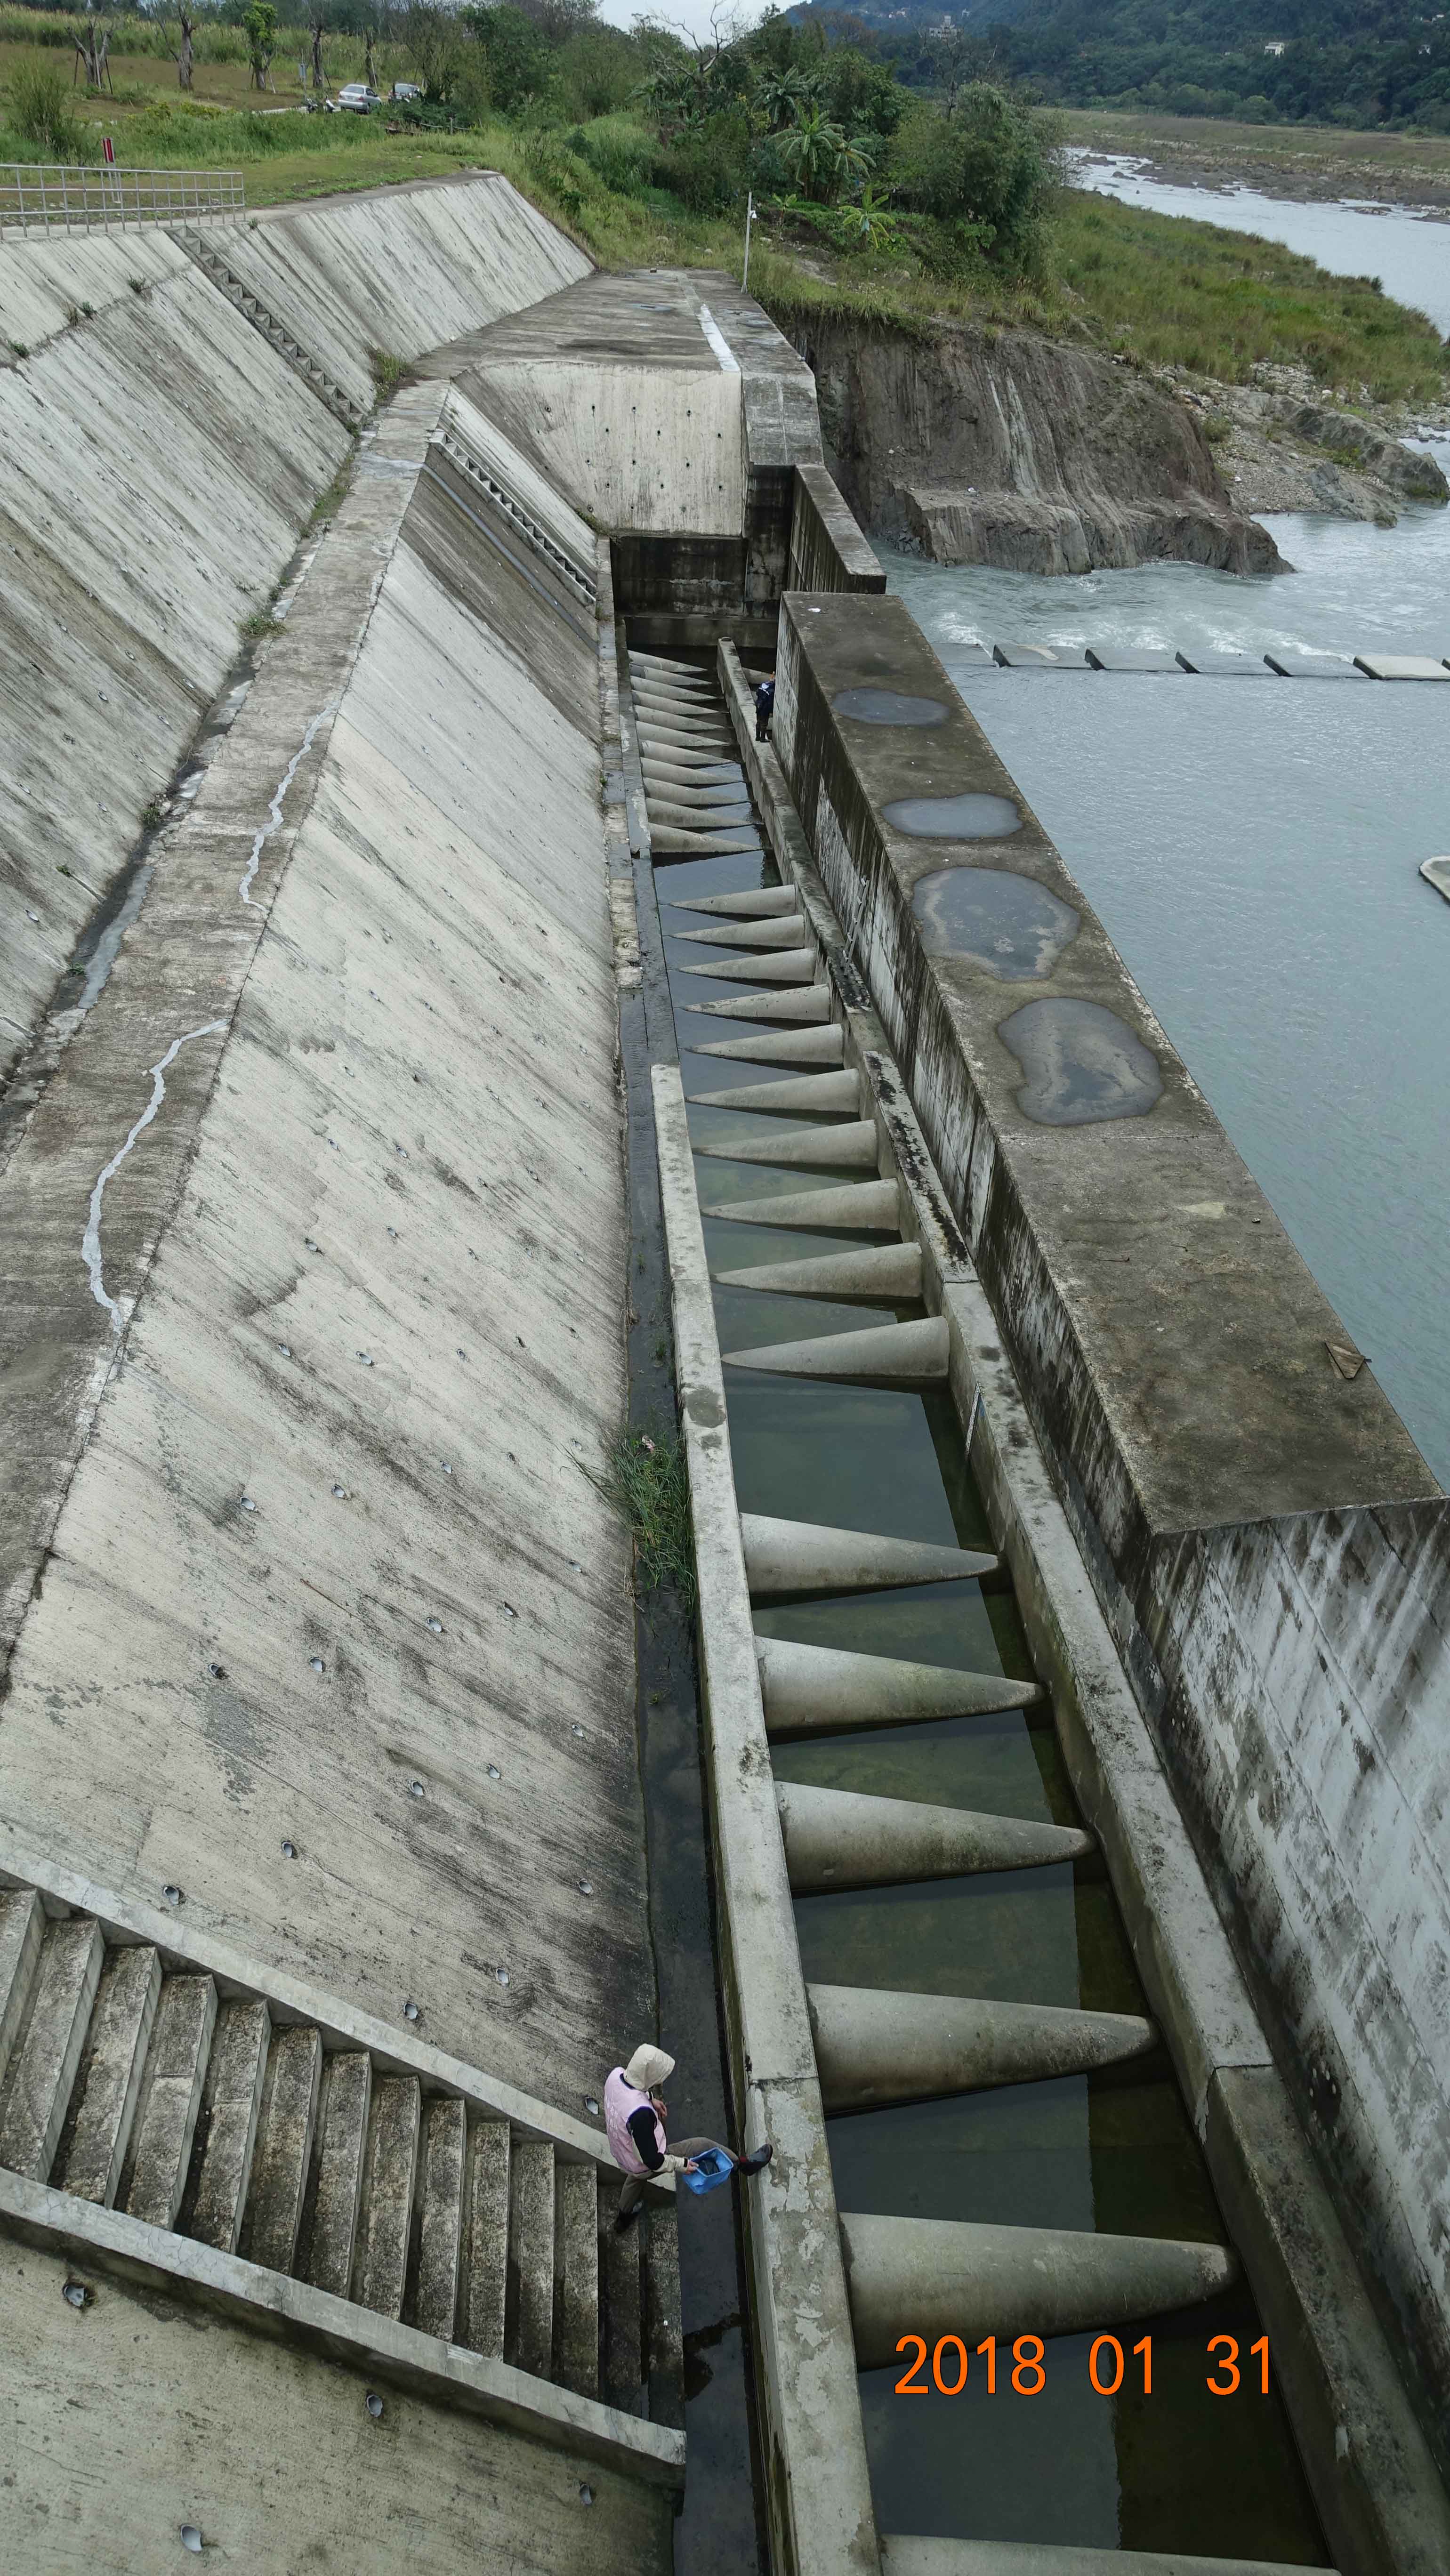 大漢溪中庄堰新設的半錐形水池採二維水理設計的魚梯